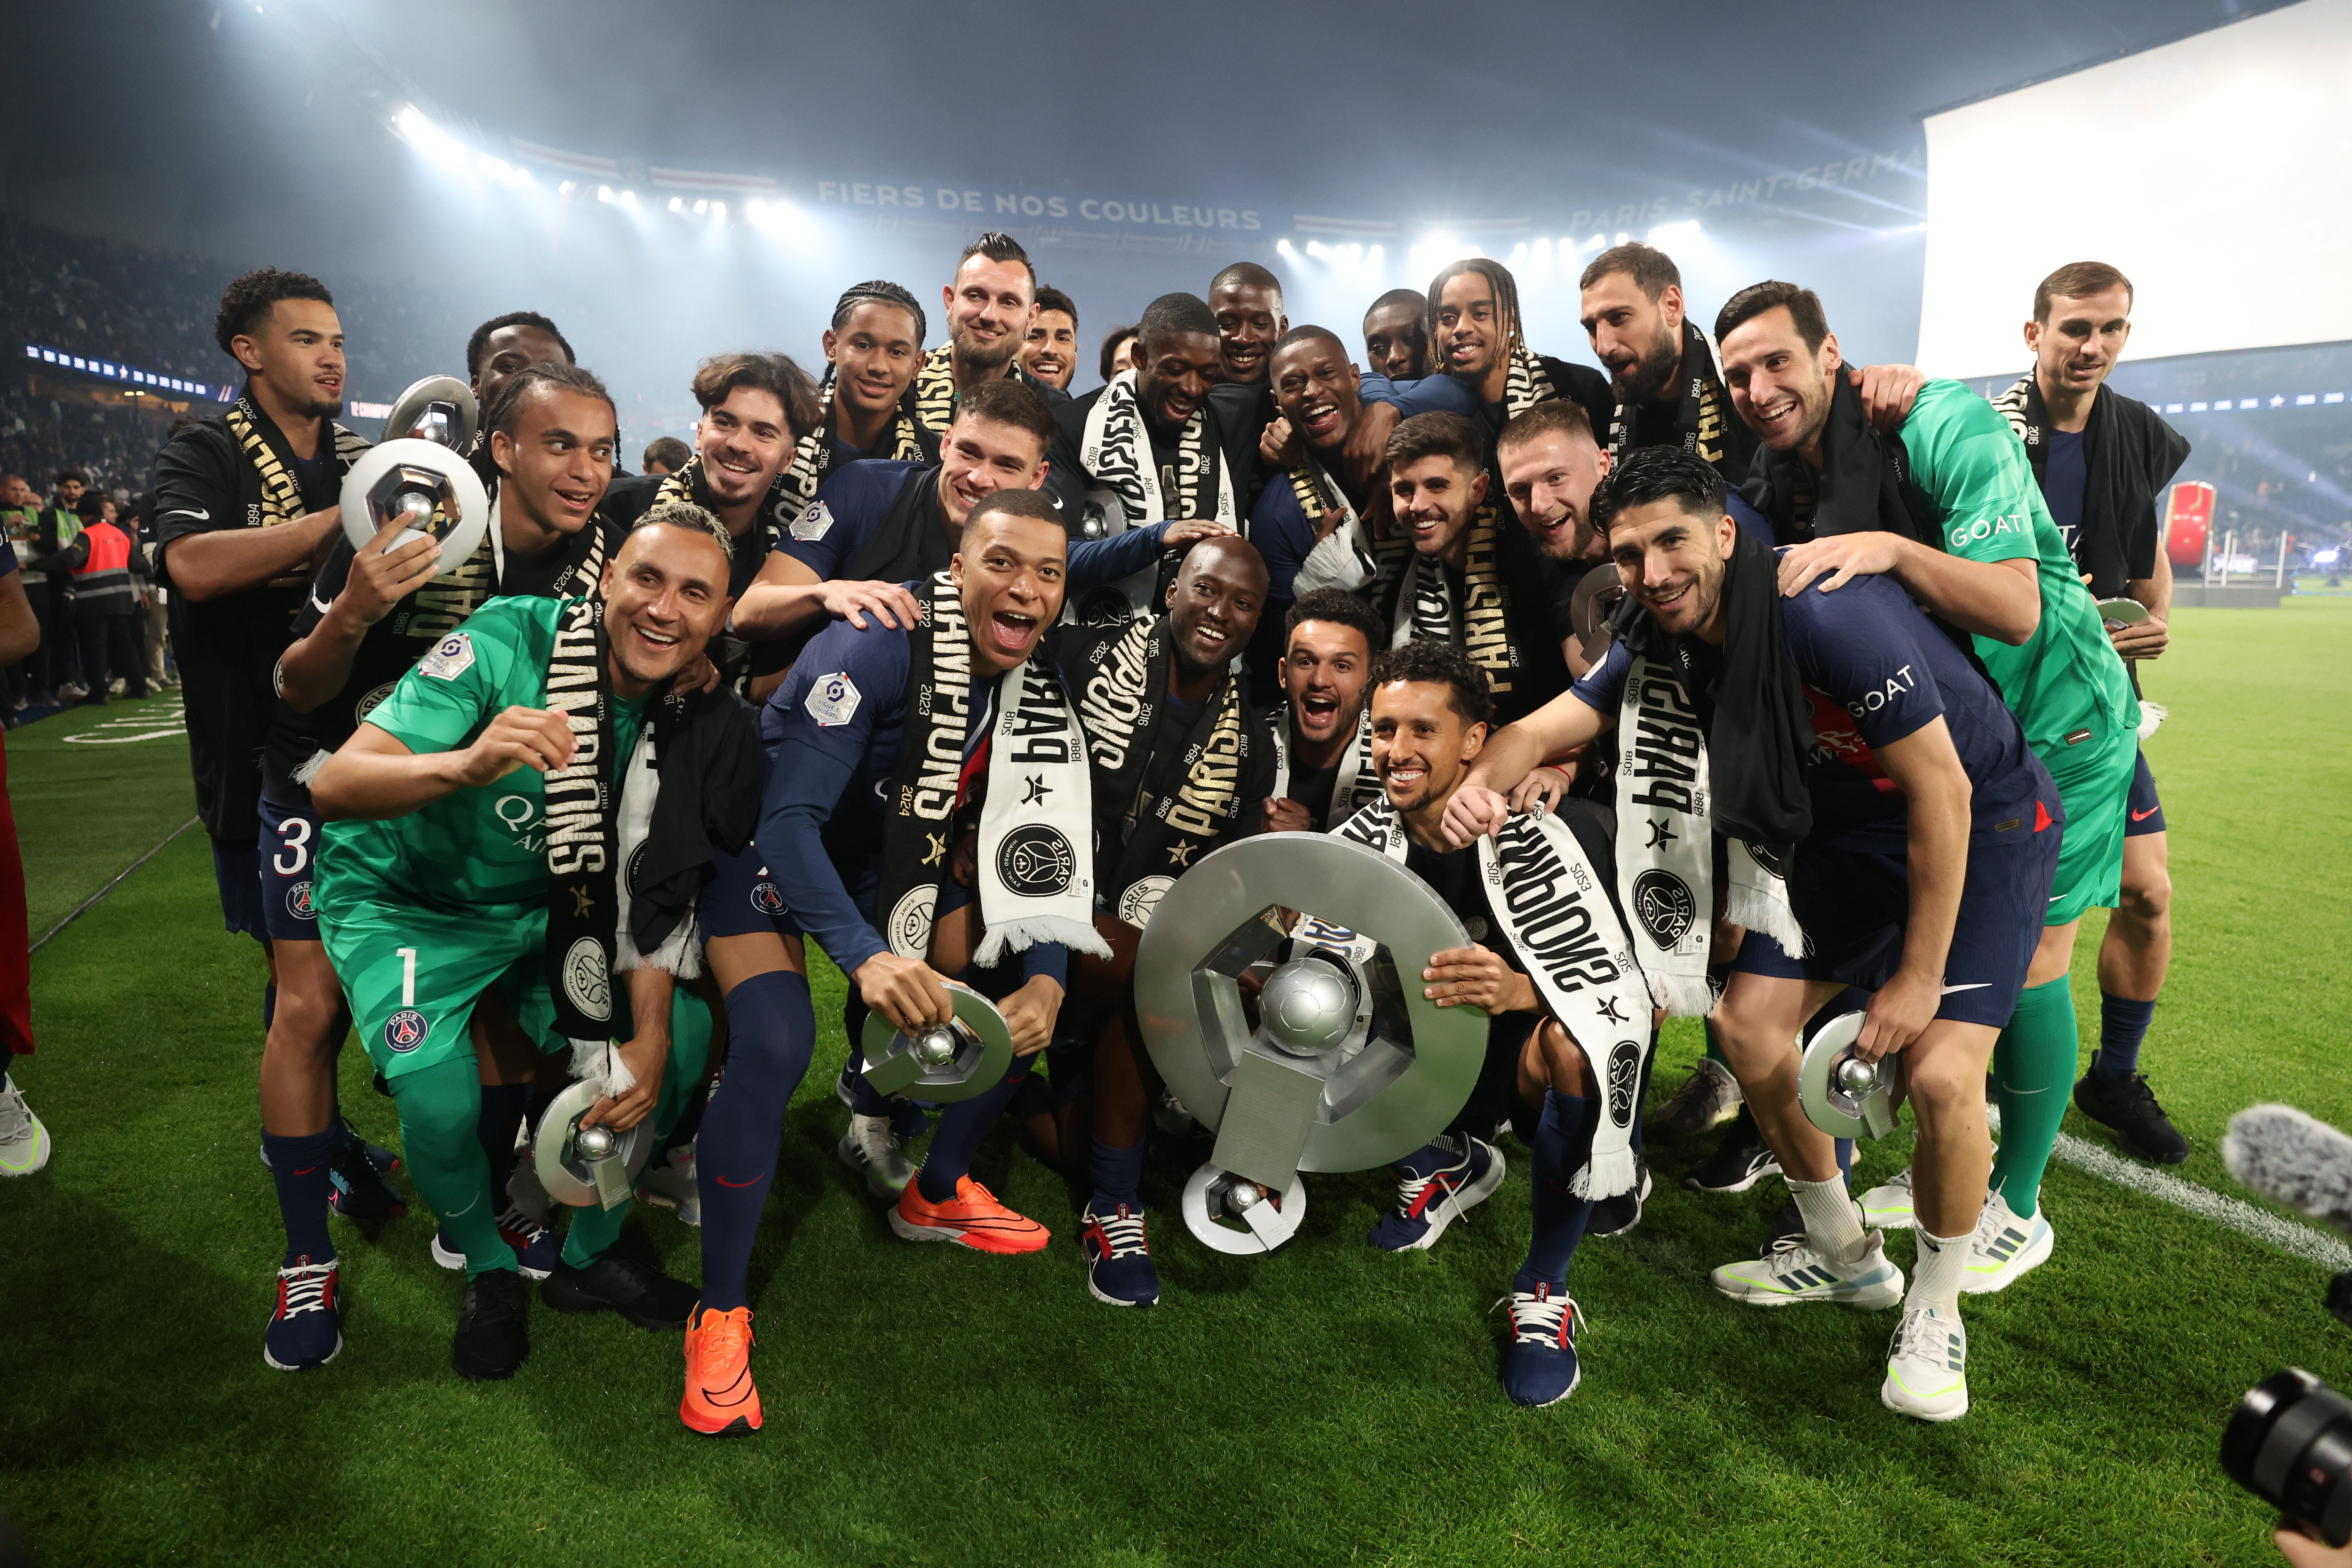 Cinq jours après l'élimination en Ligue des champions, les Parisiens ont fêter leur titre de champion de France, sans effusion. PHOTO LE PARISIEN / ARNAUD JOURNOIS